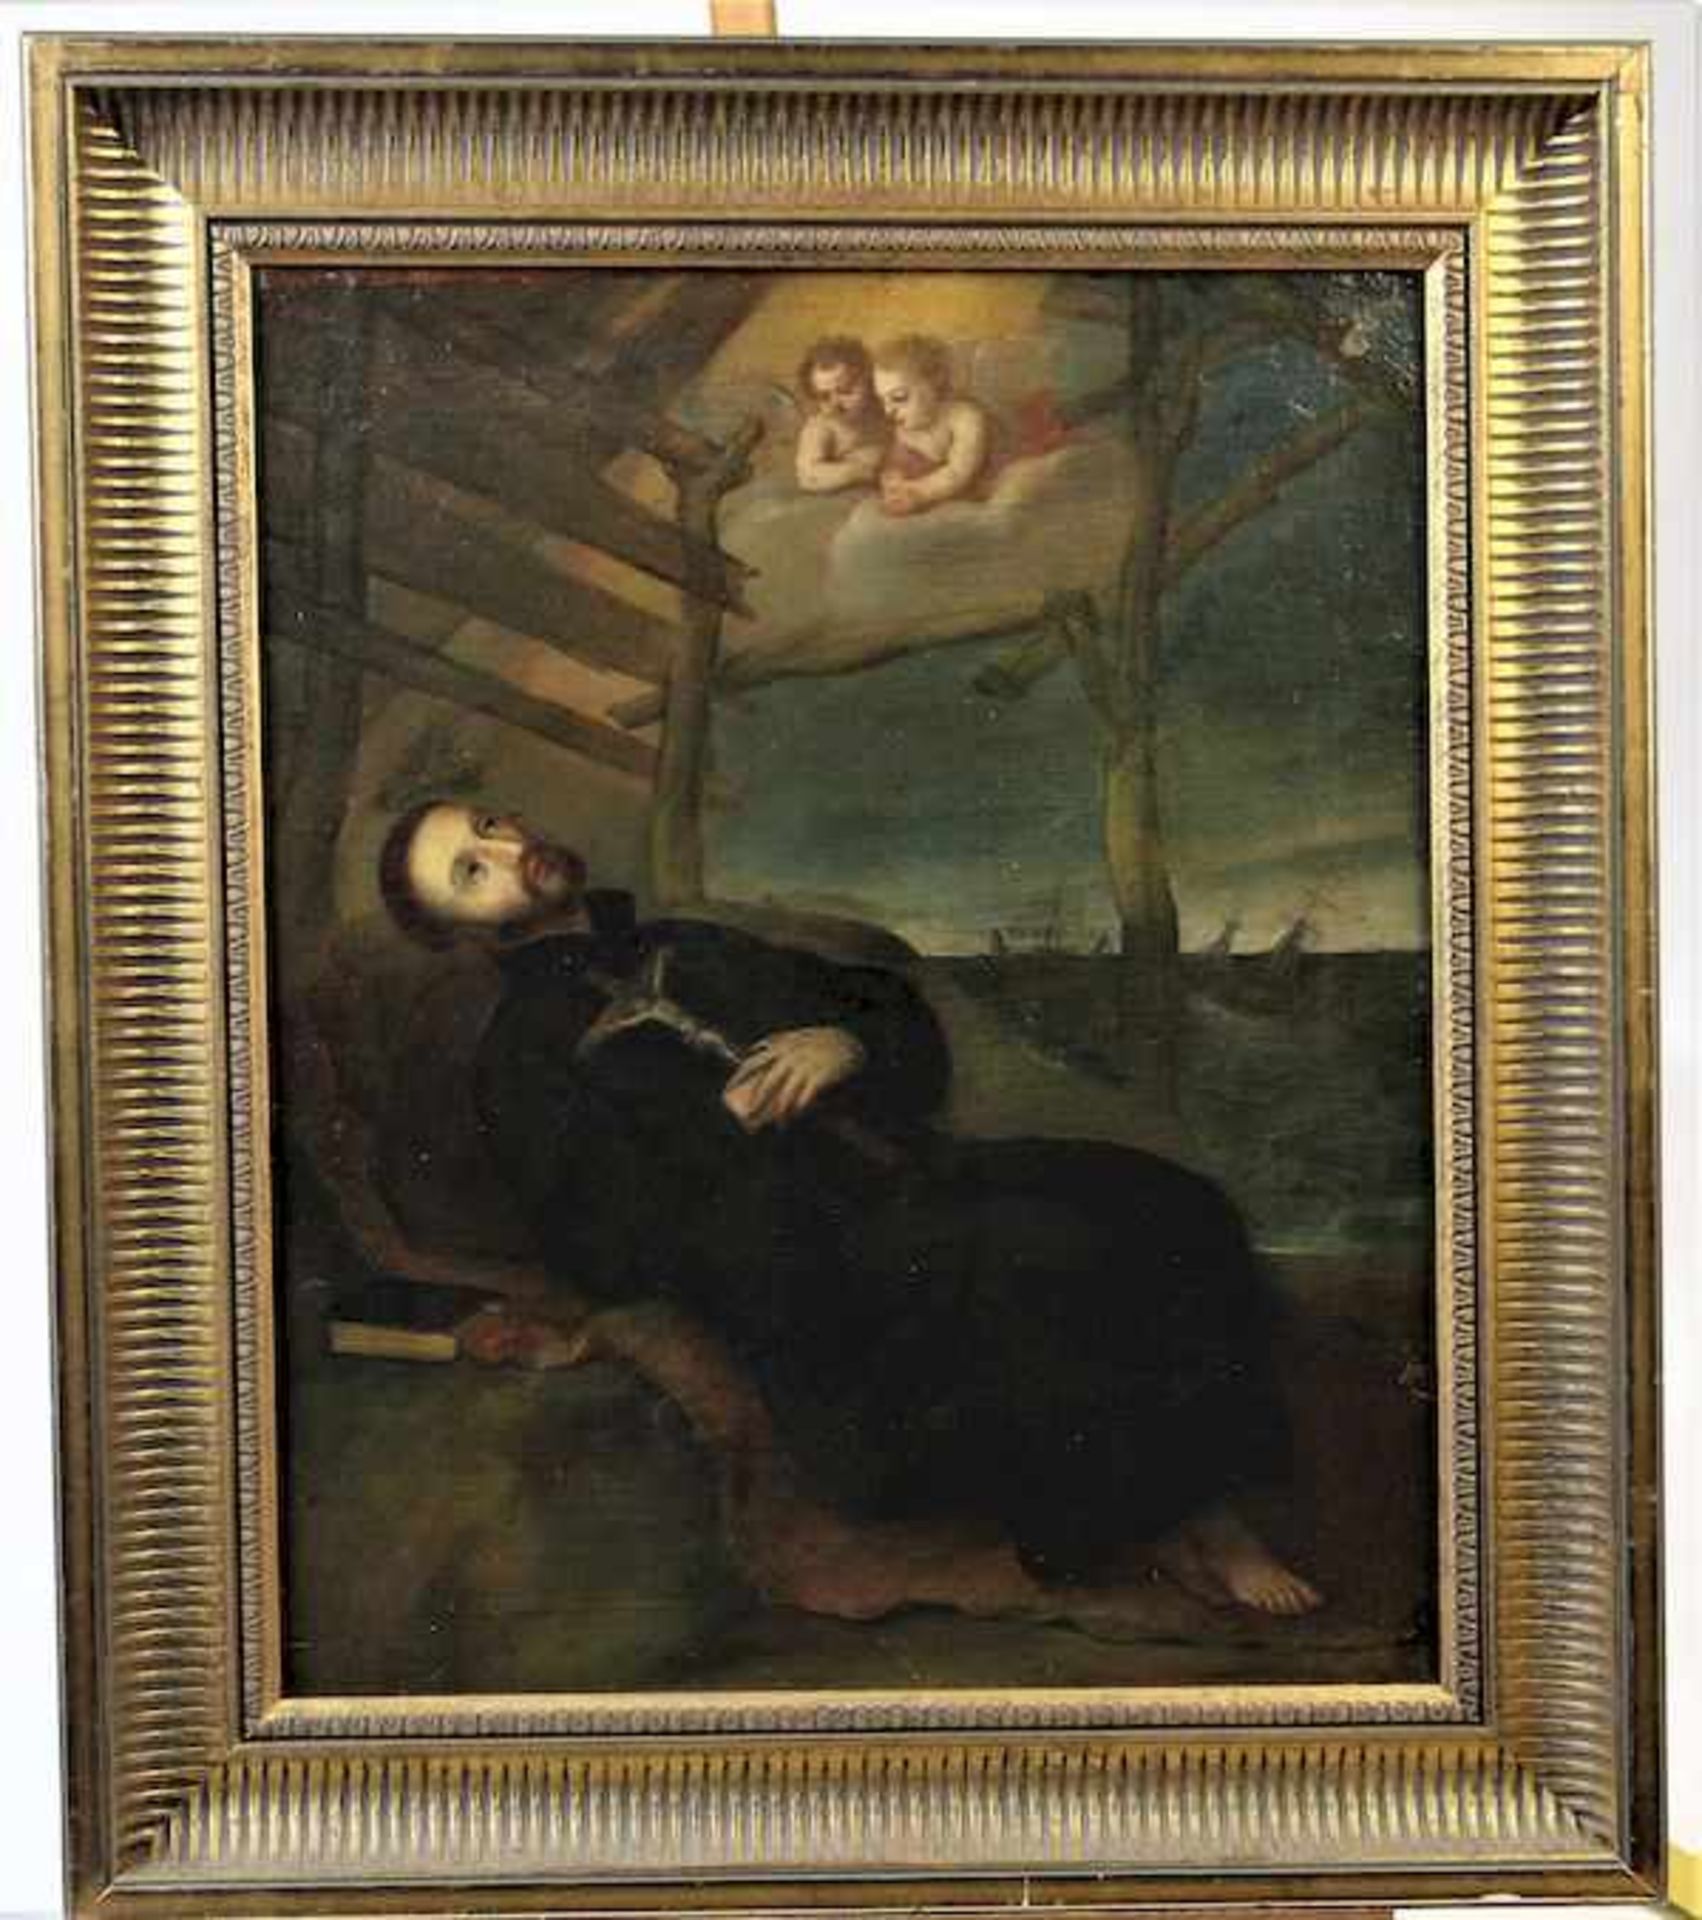 Italienischer Meister des 17.Jhdts. " Heiligenbild "Öl auf Leinwand rücks. undeutlich beschriftet